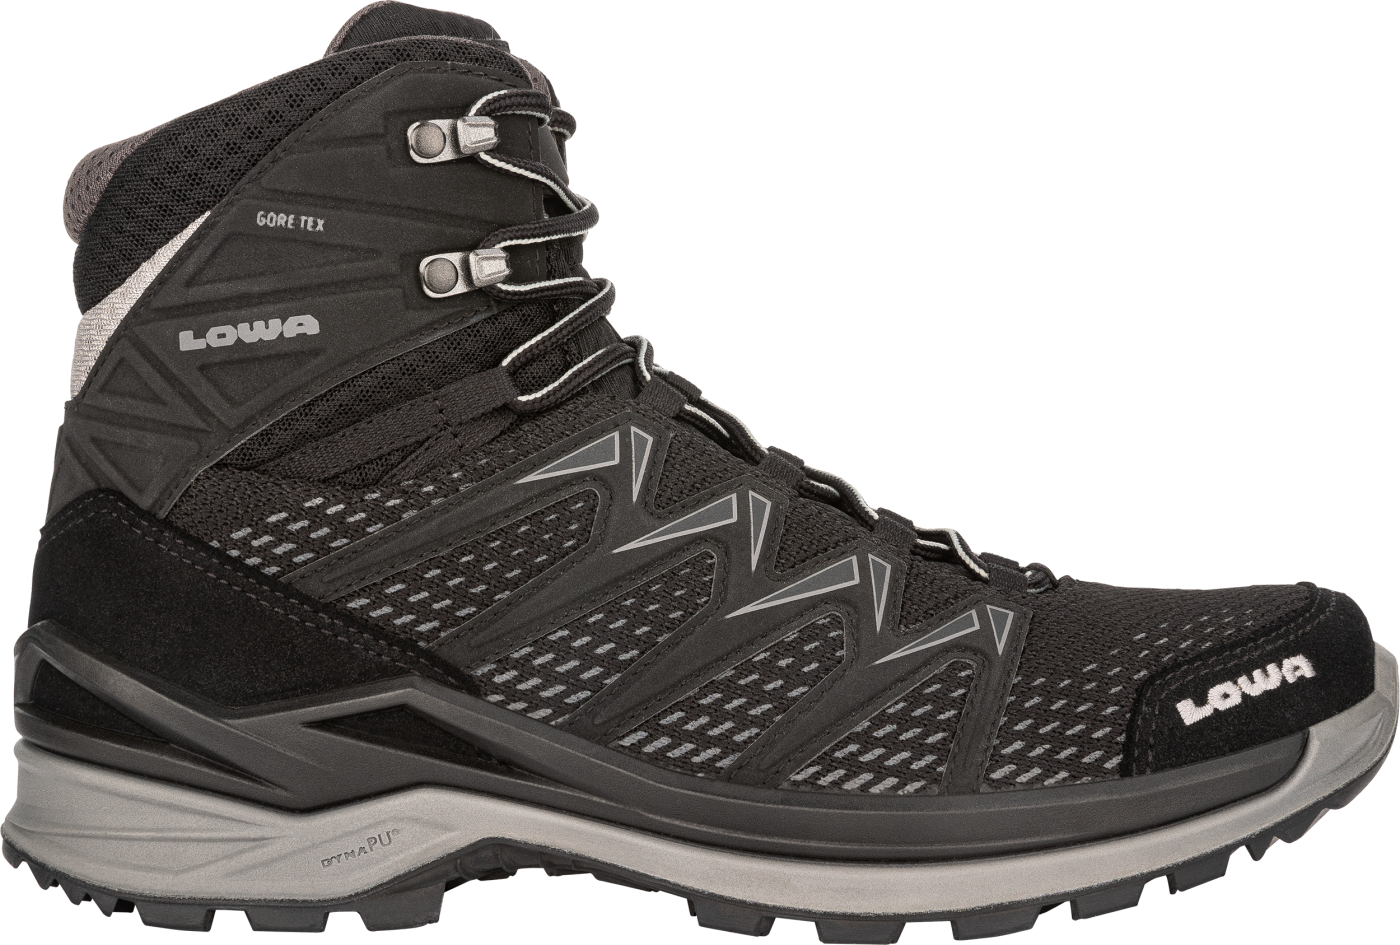 Lowa Innox Pro Gtx Mid TF - Hiking boots - Men's